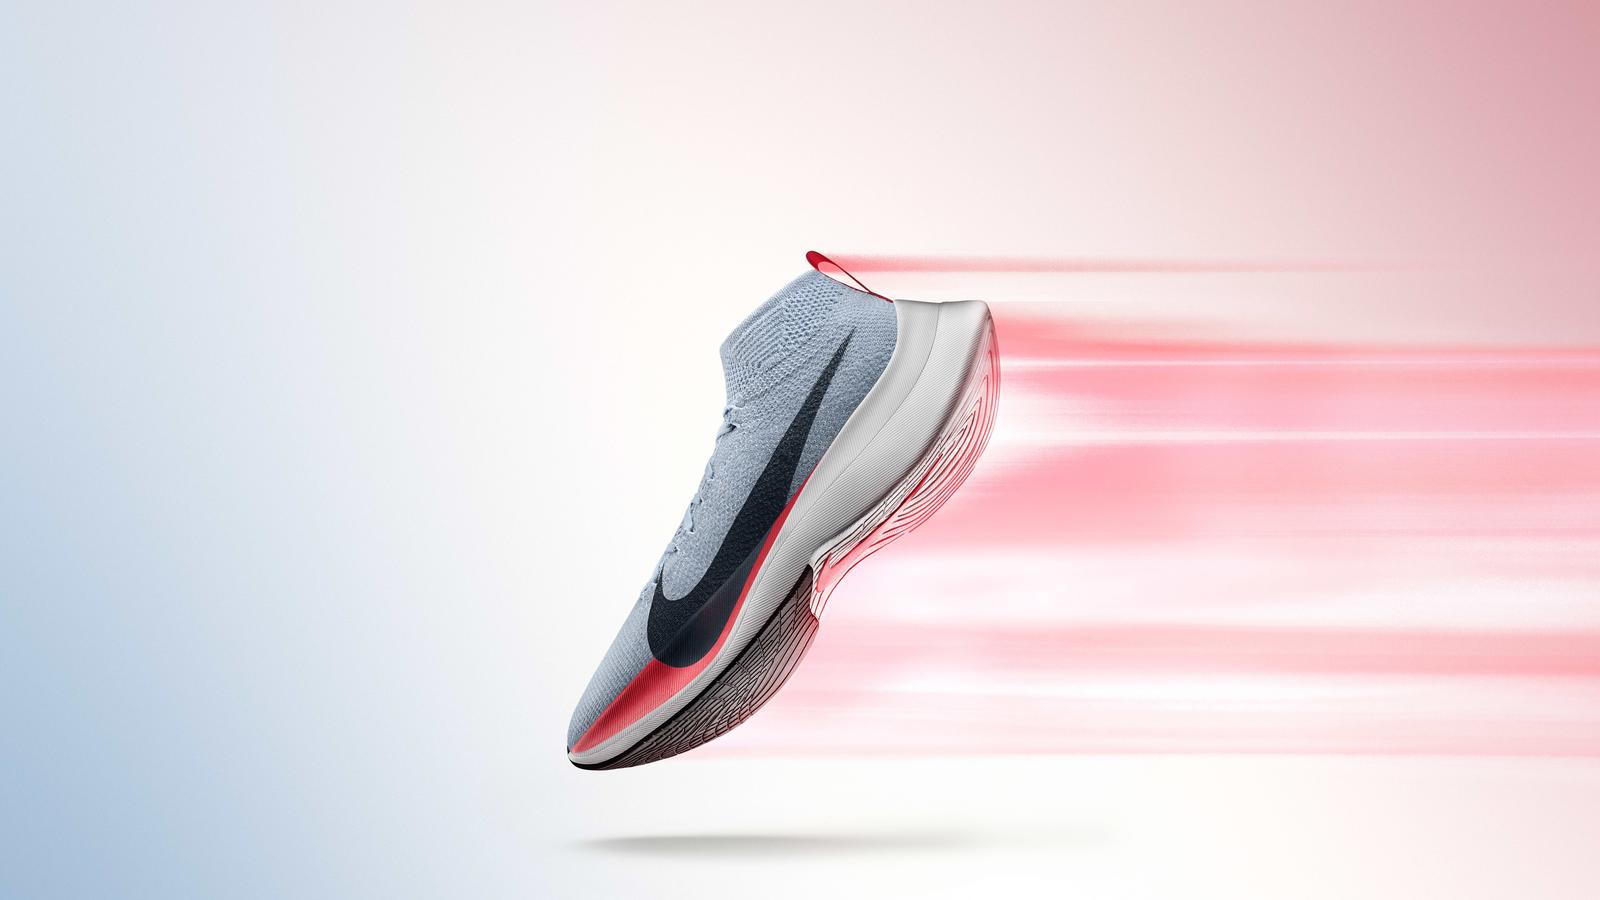 Trên chân Nike Vaporfly 4% Flyknit - Êm chân quá đã! - nike zoom vaporfly elite jpeg hd 1600